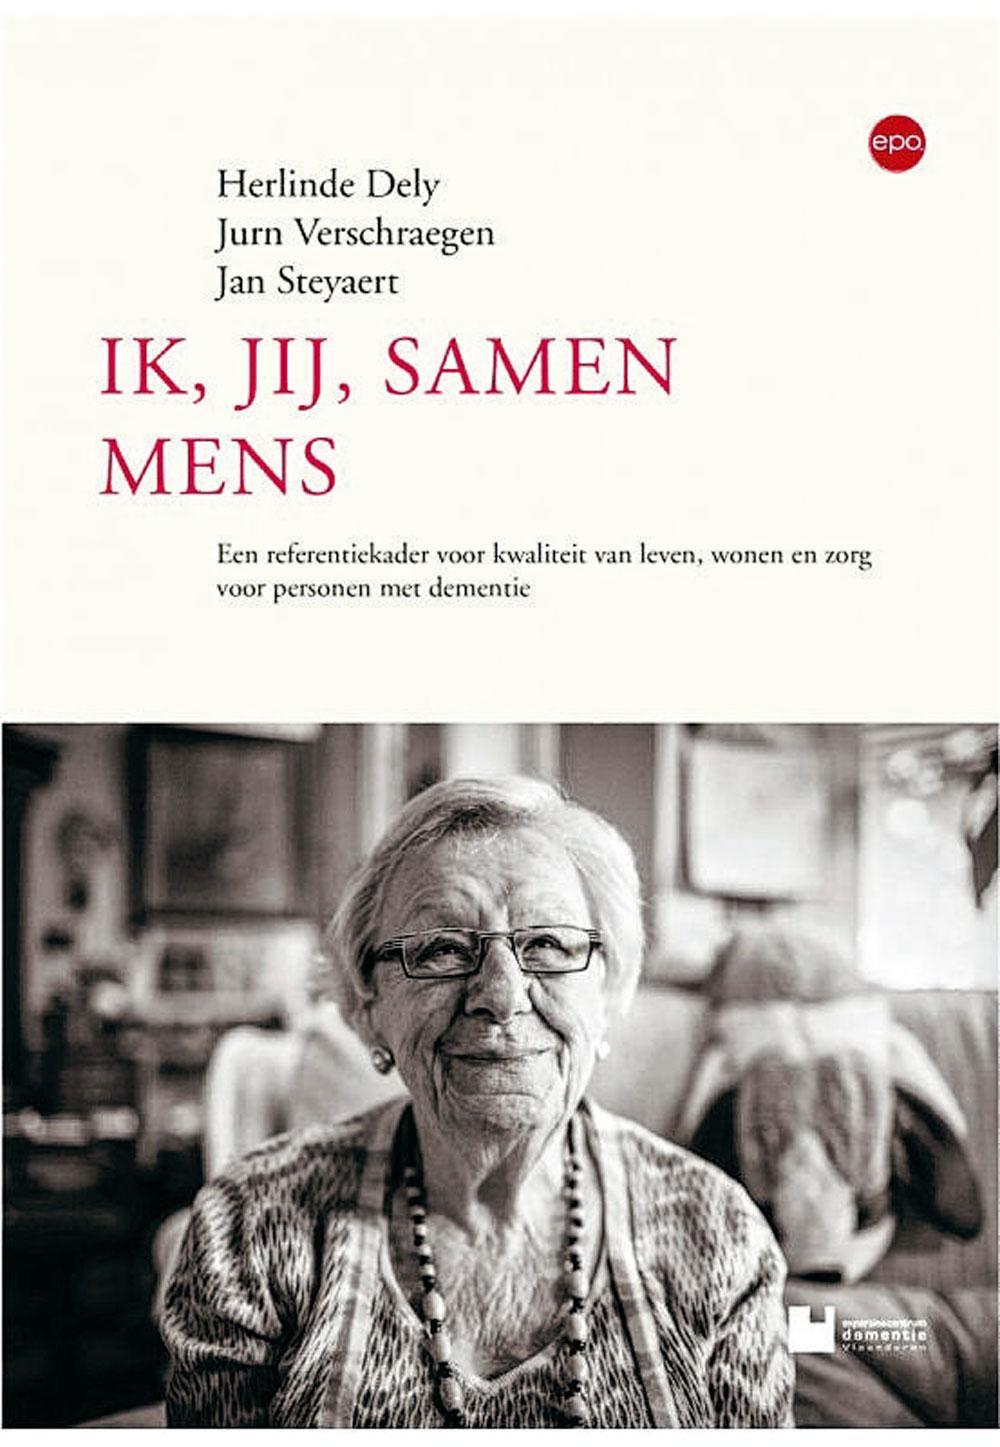 Herlinde Dely, Jurn Verschraegen en Jan Steyaert, Ik, jij, samen mens: een referentiekader voor kwaliteit van leven, wonen en zorg voor personen met dementie, Epo, 240 blz., 27,50 euro.